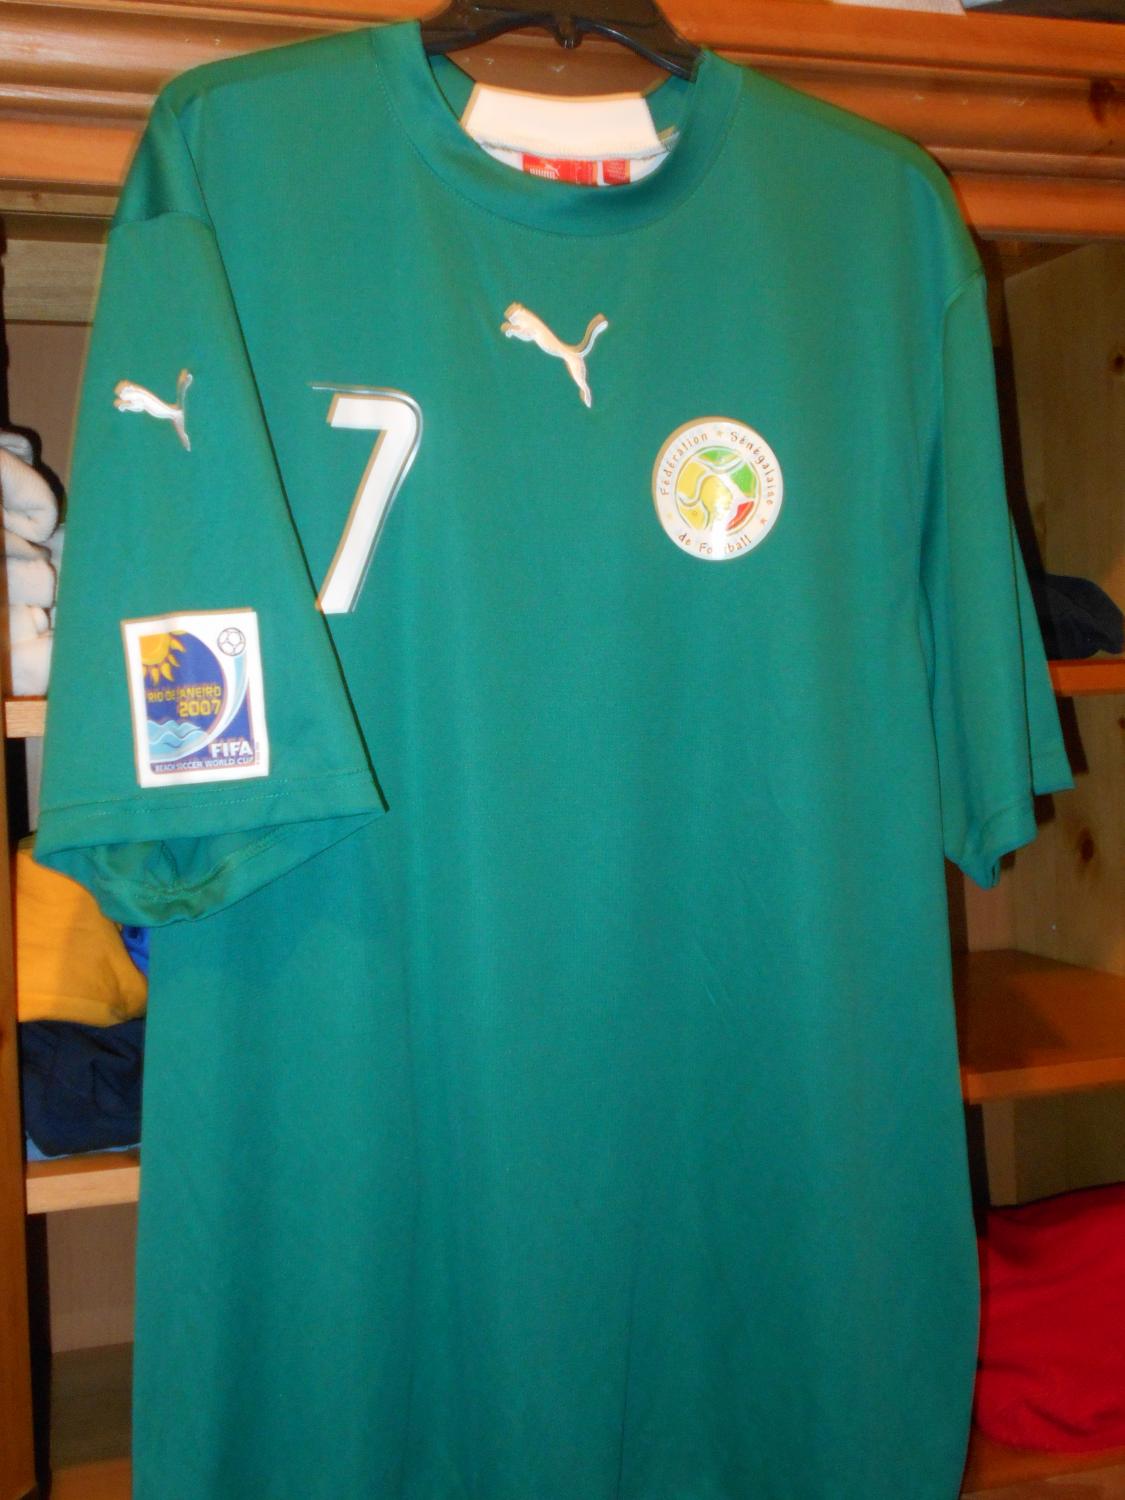 maillot de foot sénégal particulier 2007 rétro